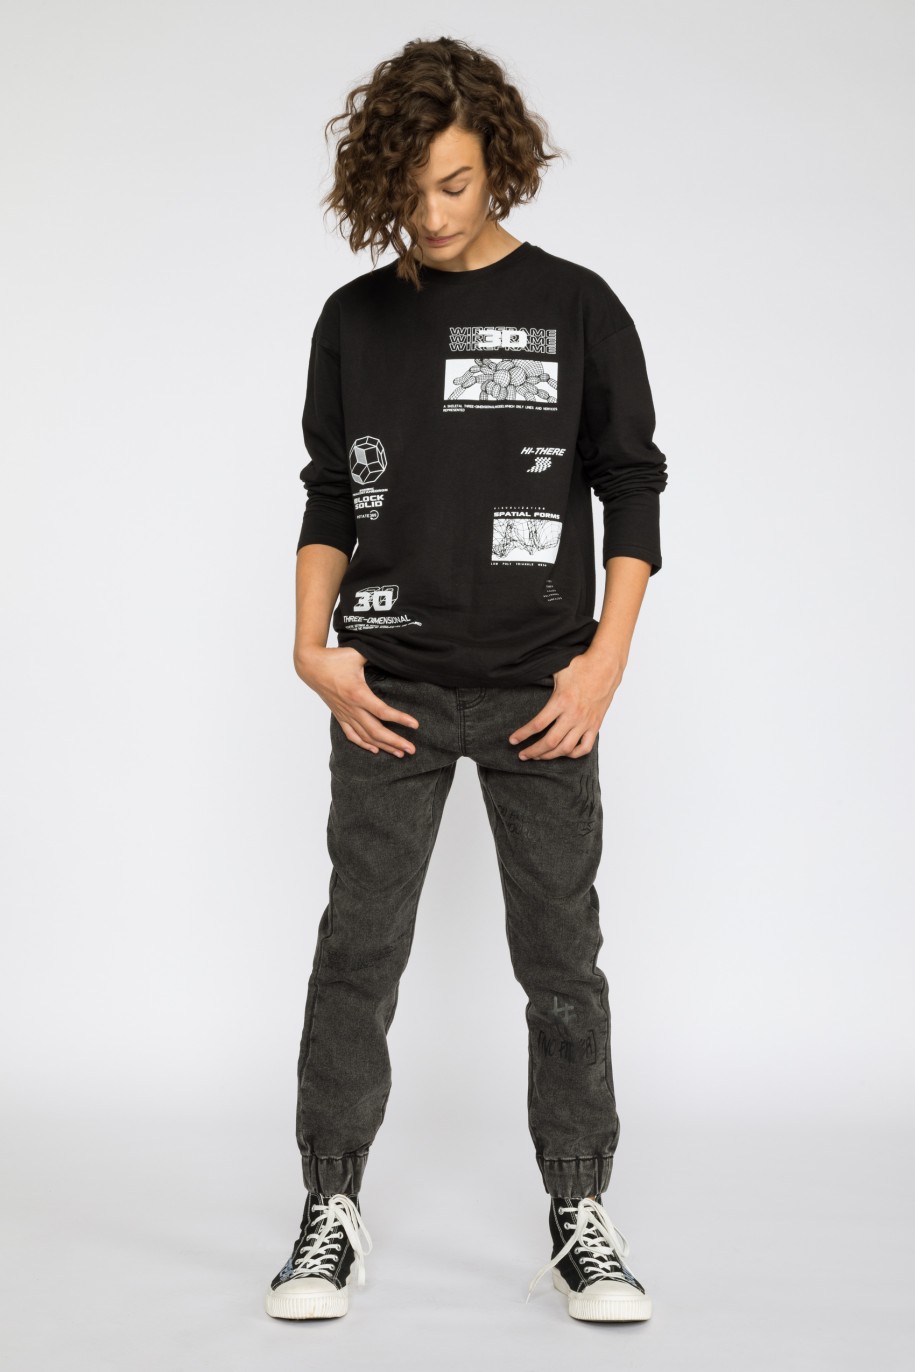 Czarny t-shirt z długim rękawem dla chłopaka z nadrukami - 36706